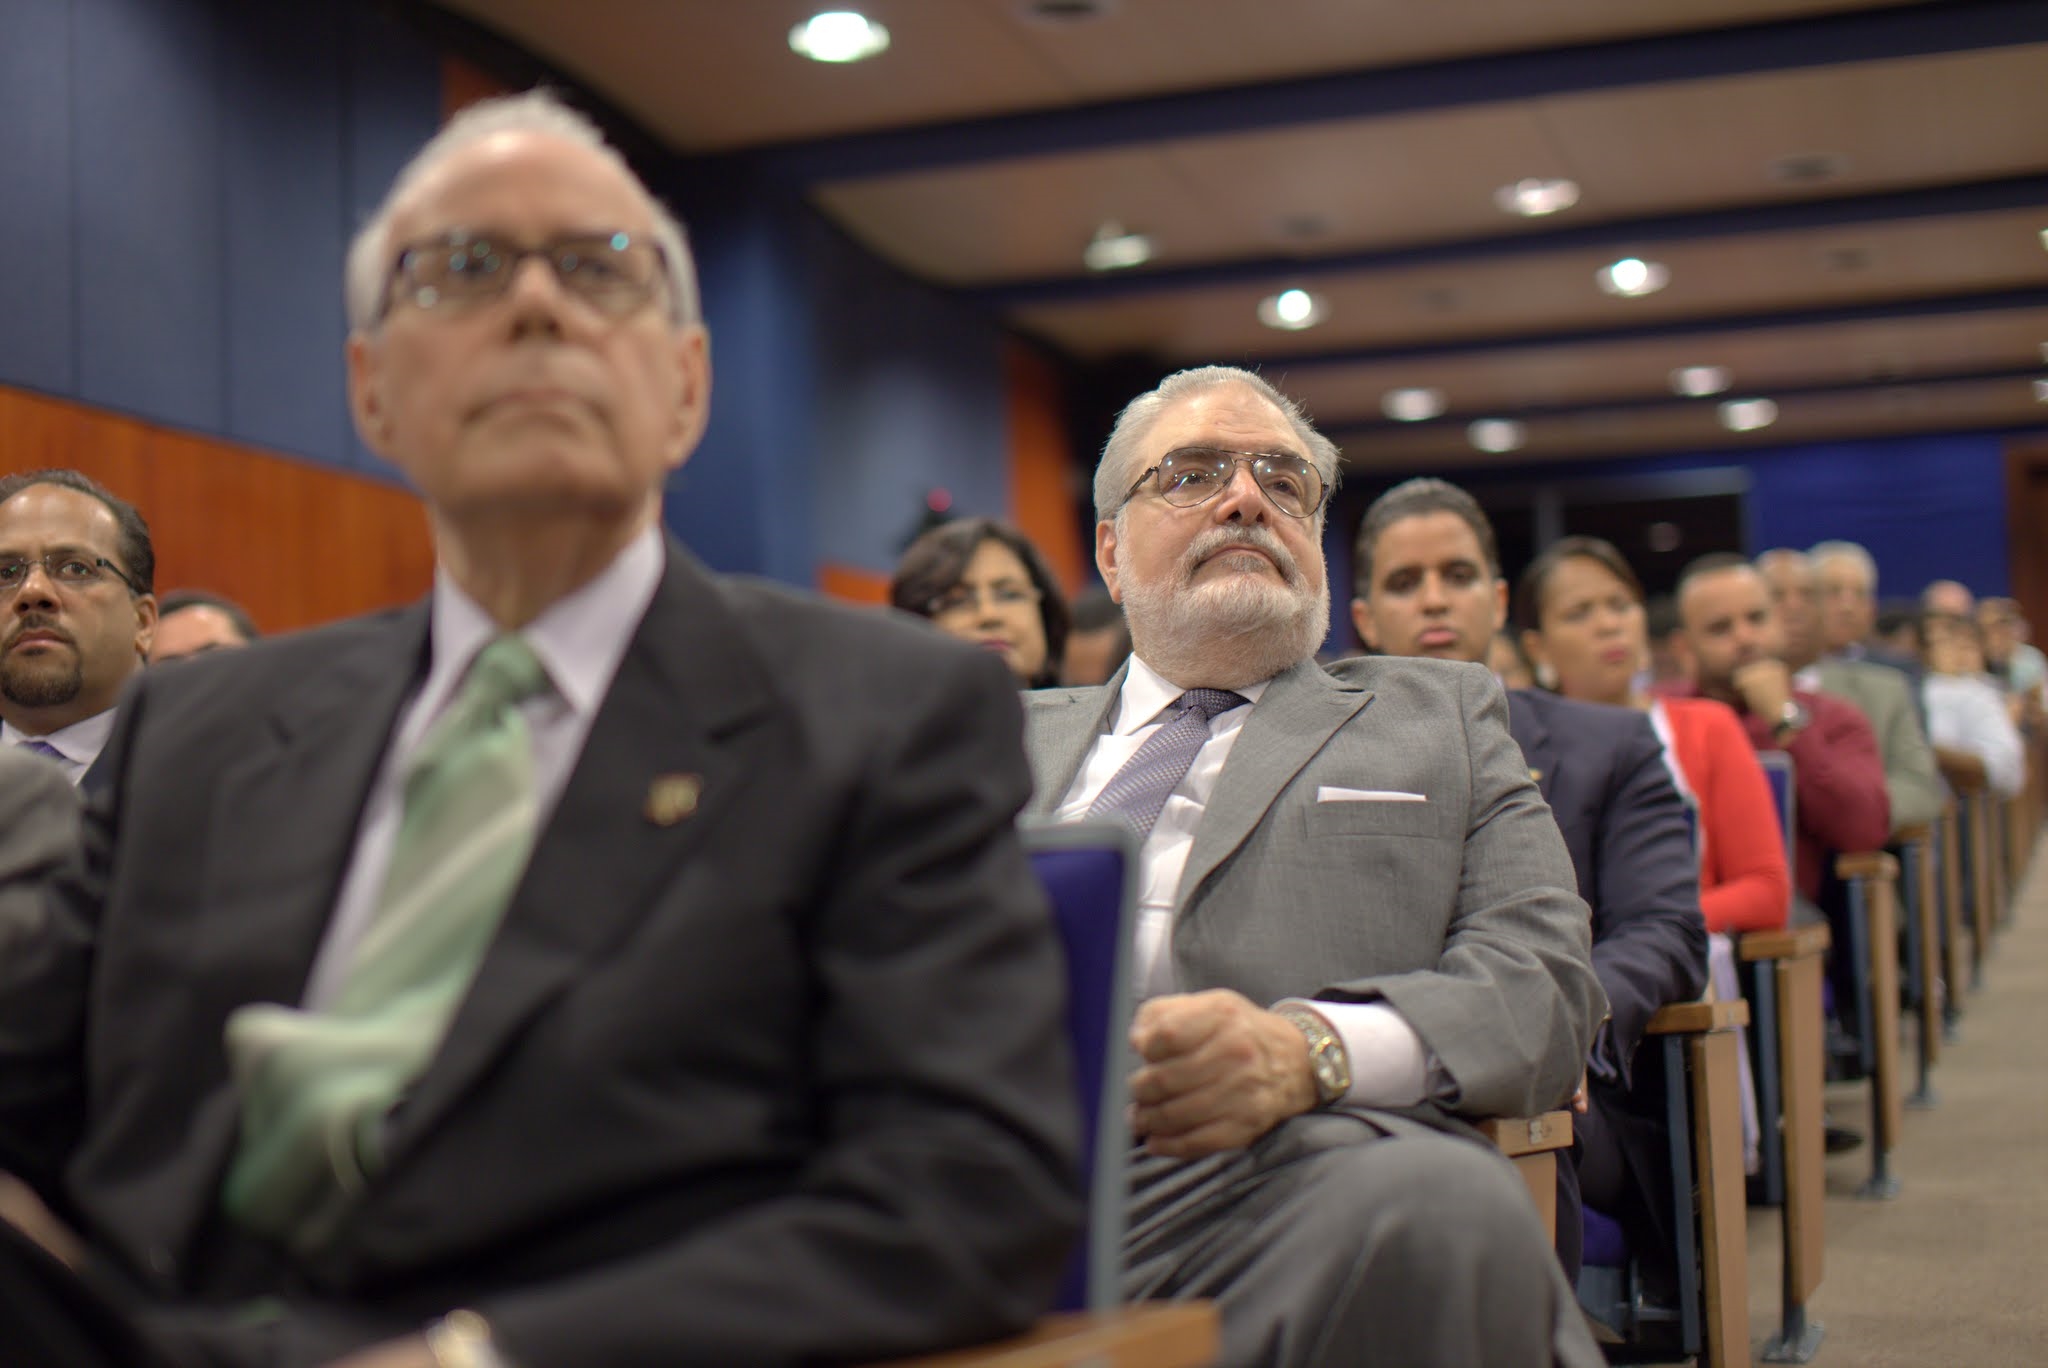 La disertación fue efectuada en el auditorio doctor Leonel Rodríguez Rib, ubicada en el campus principal de UNAPEC